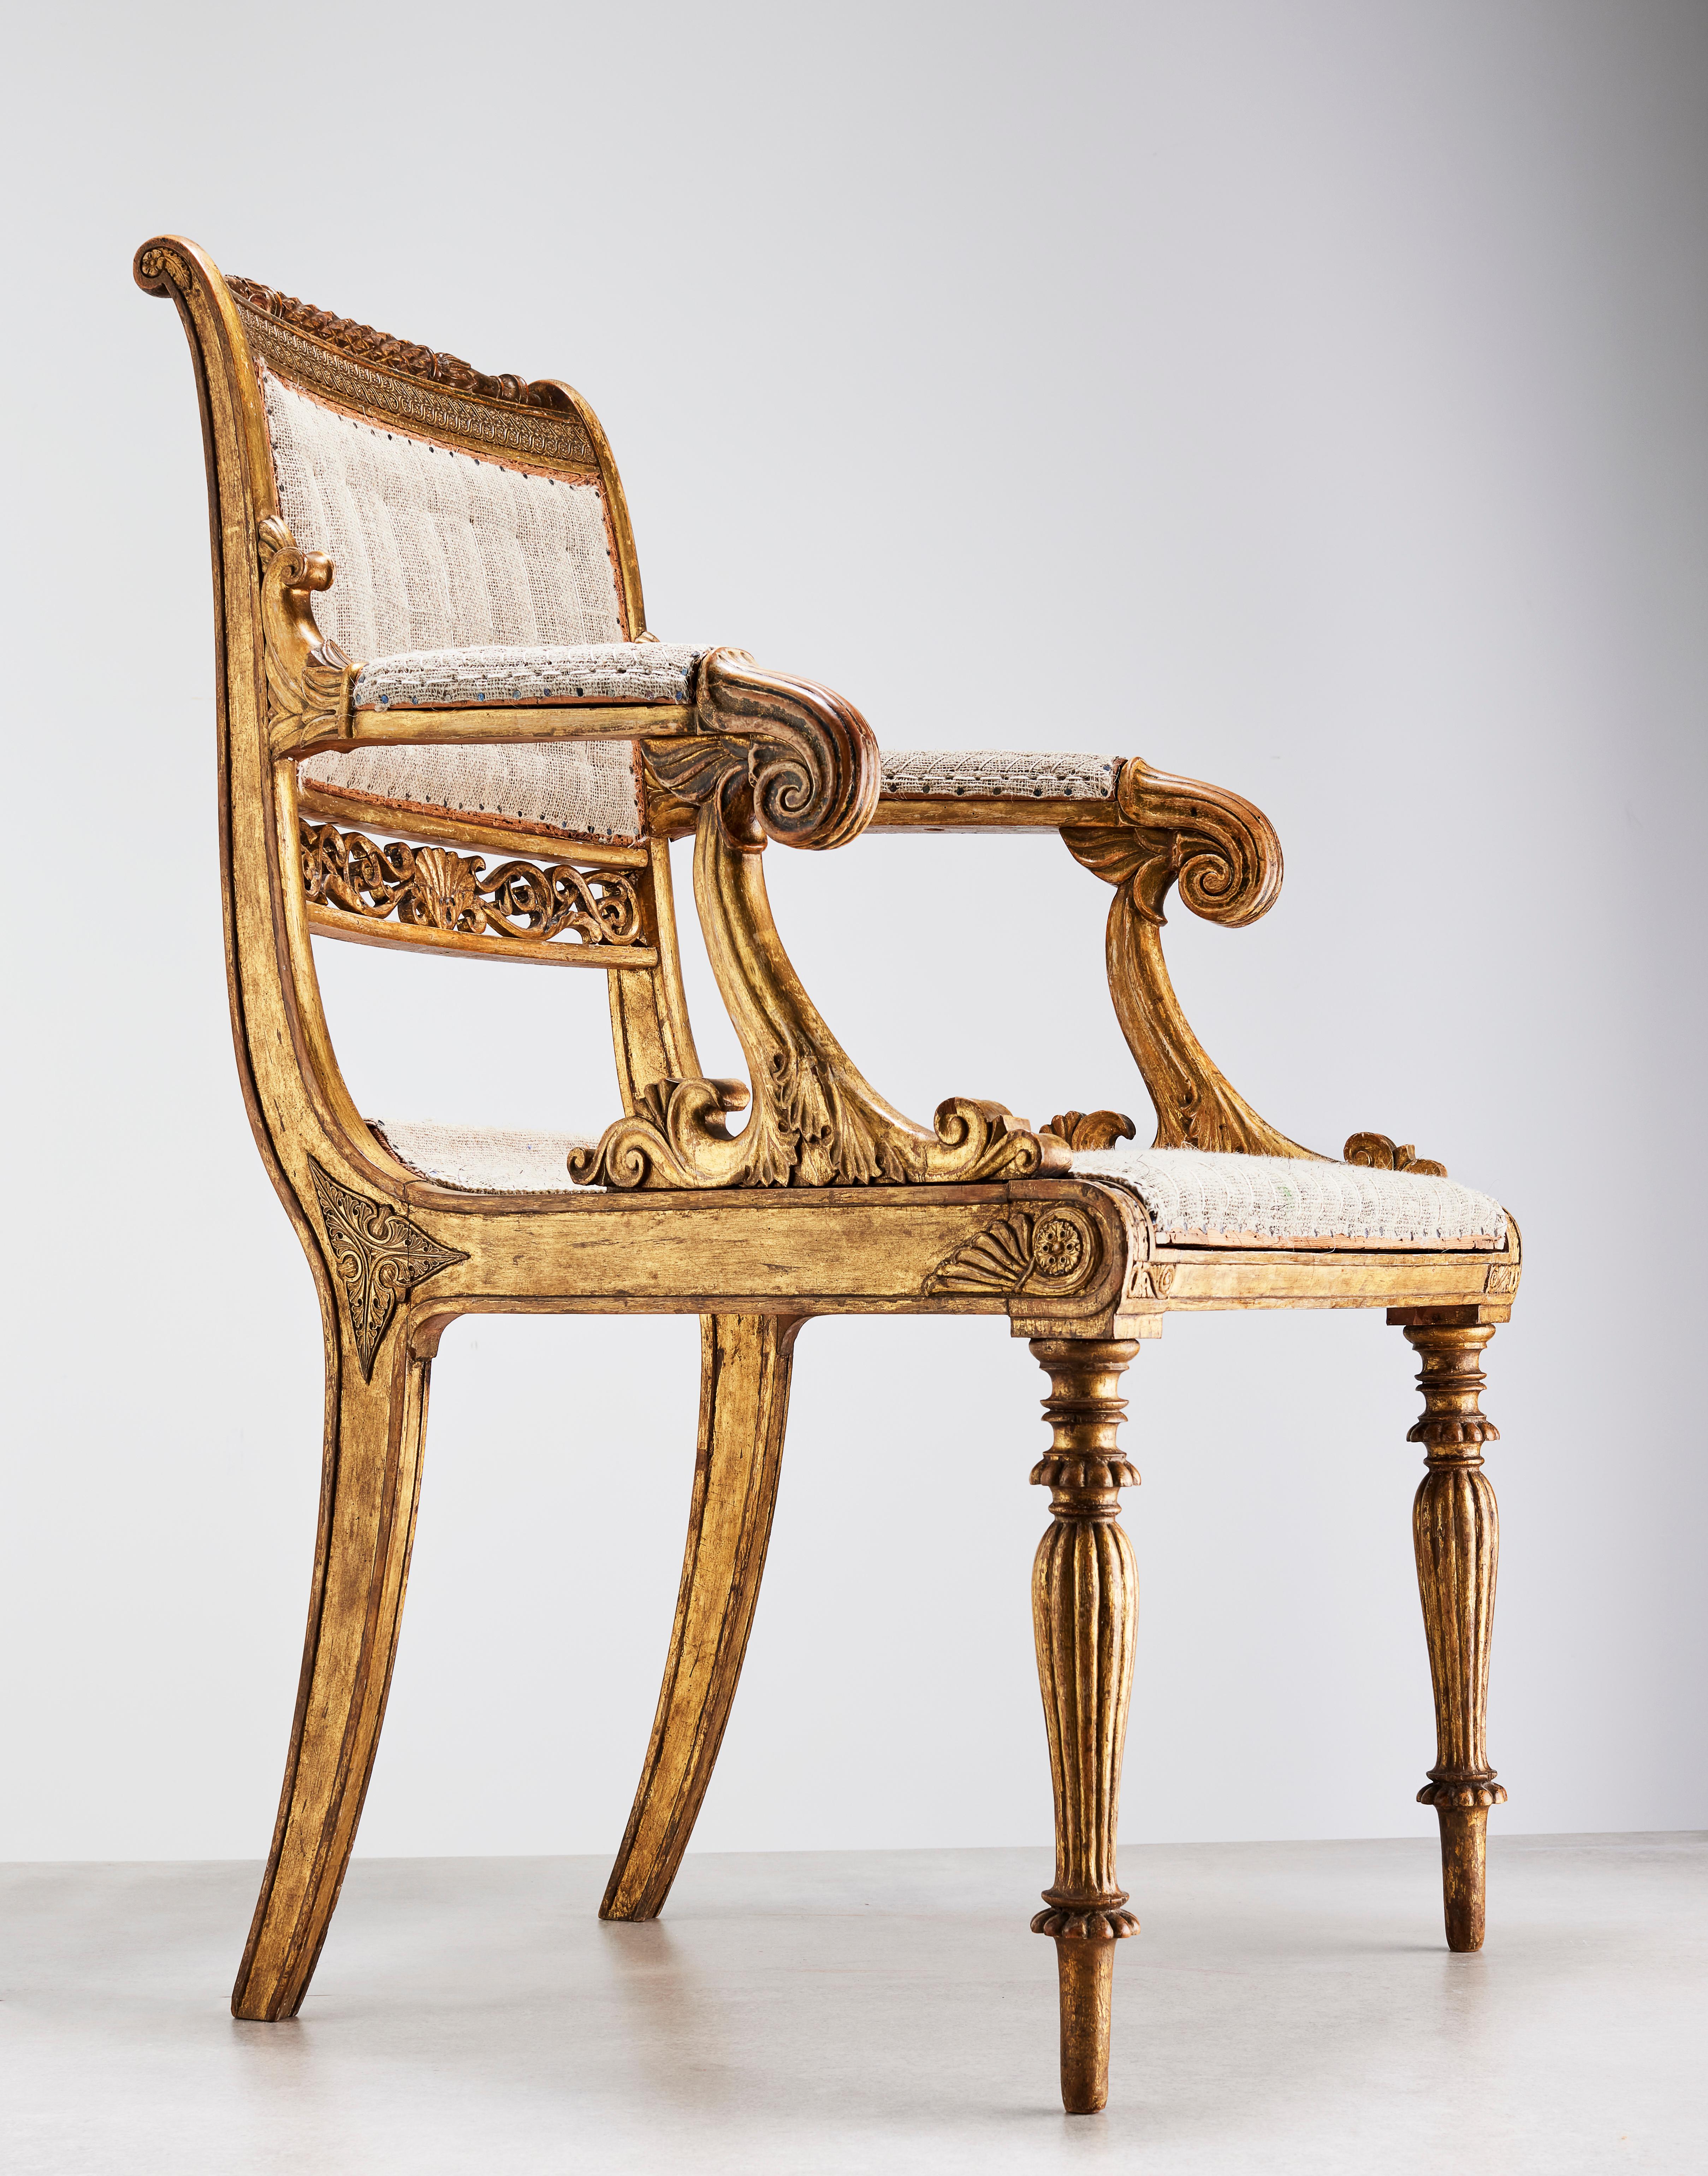 Ein sehr dekorativer und großer Sessel aus vergoldetem Holz nach einem Entwurf des berühmten dänischen Architekten Gustav Friedrich Hetsch (1788-1964). Der in Deutschland geborene Architekt arbeitete hauptsächlich in Kopenhagen und fertigte eine